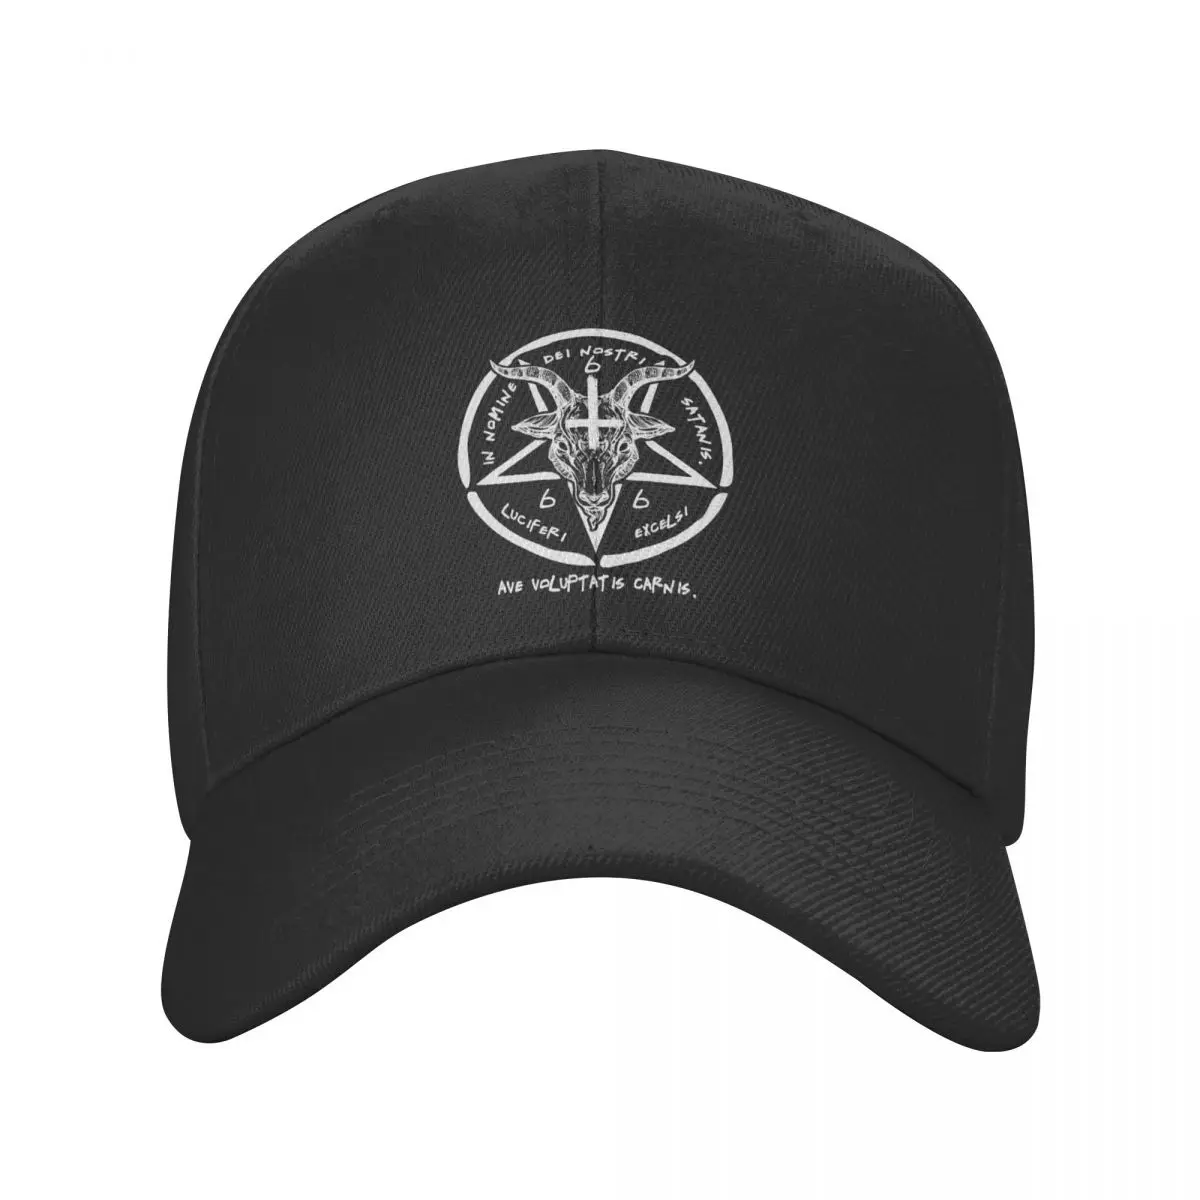 

Classic 666 Baphomet Baseball Cap Men Women Adjustable Adult Sigil Of Satan Knights Templar Dad Hat Outdoor Snapback Caps